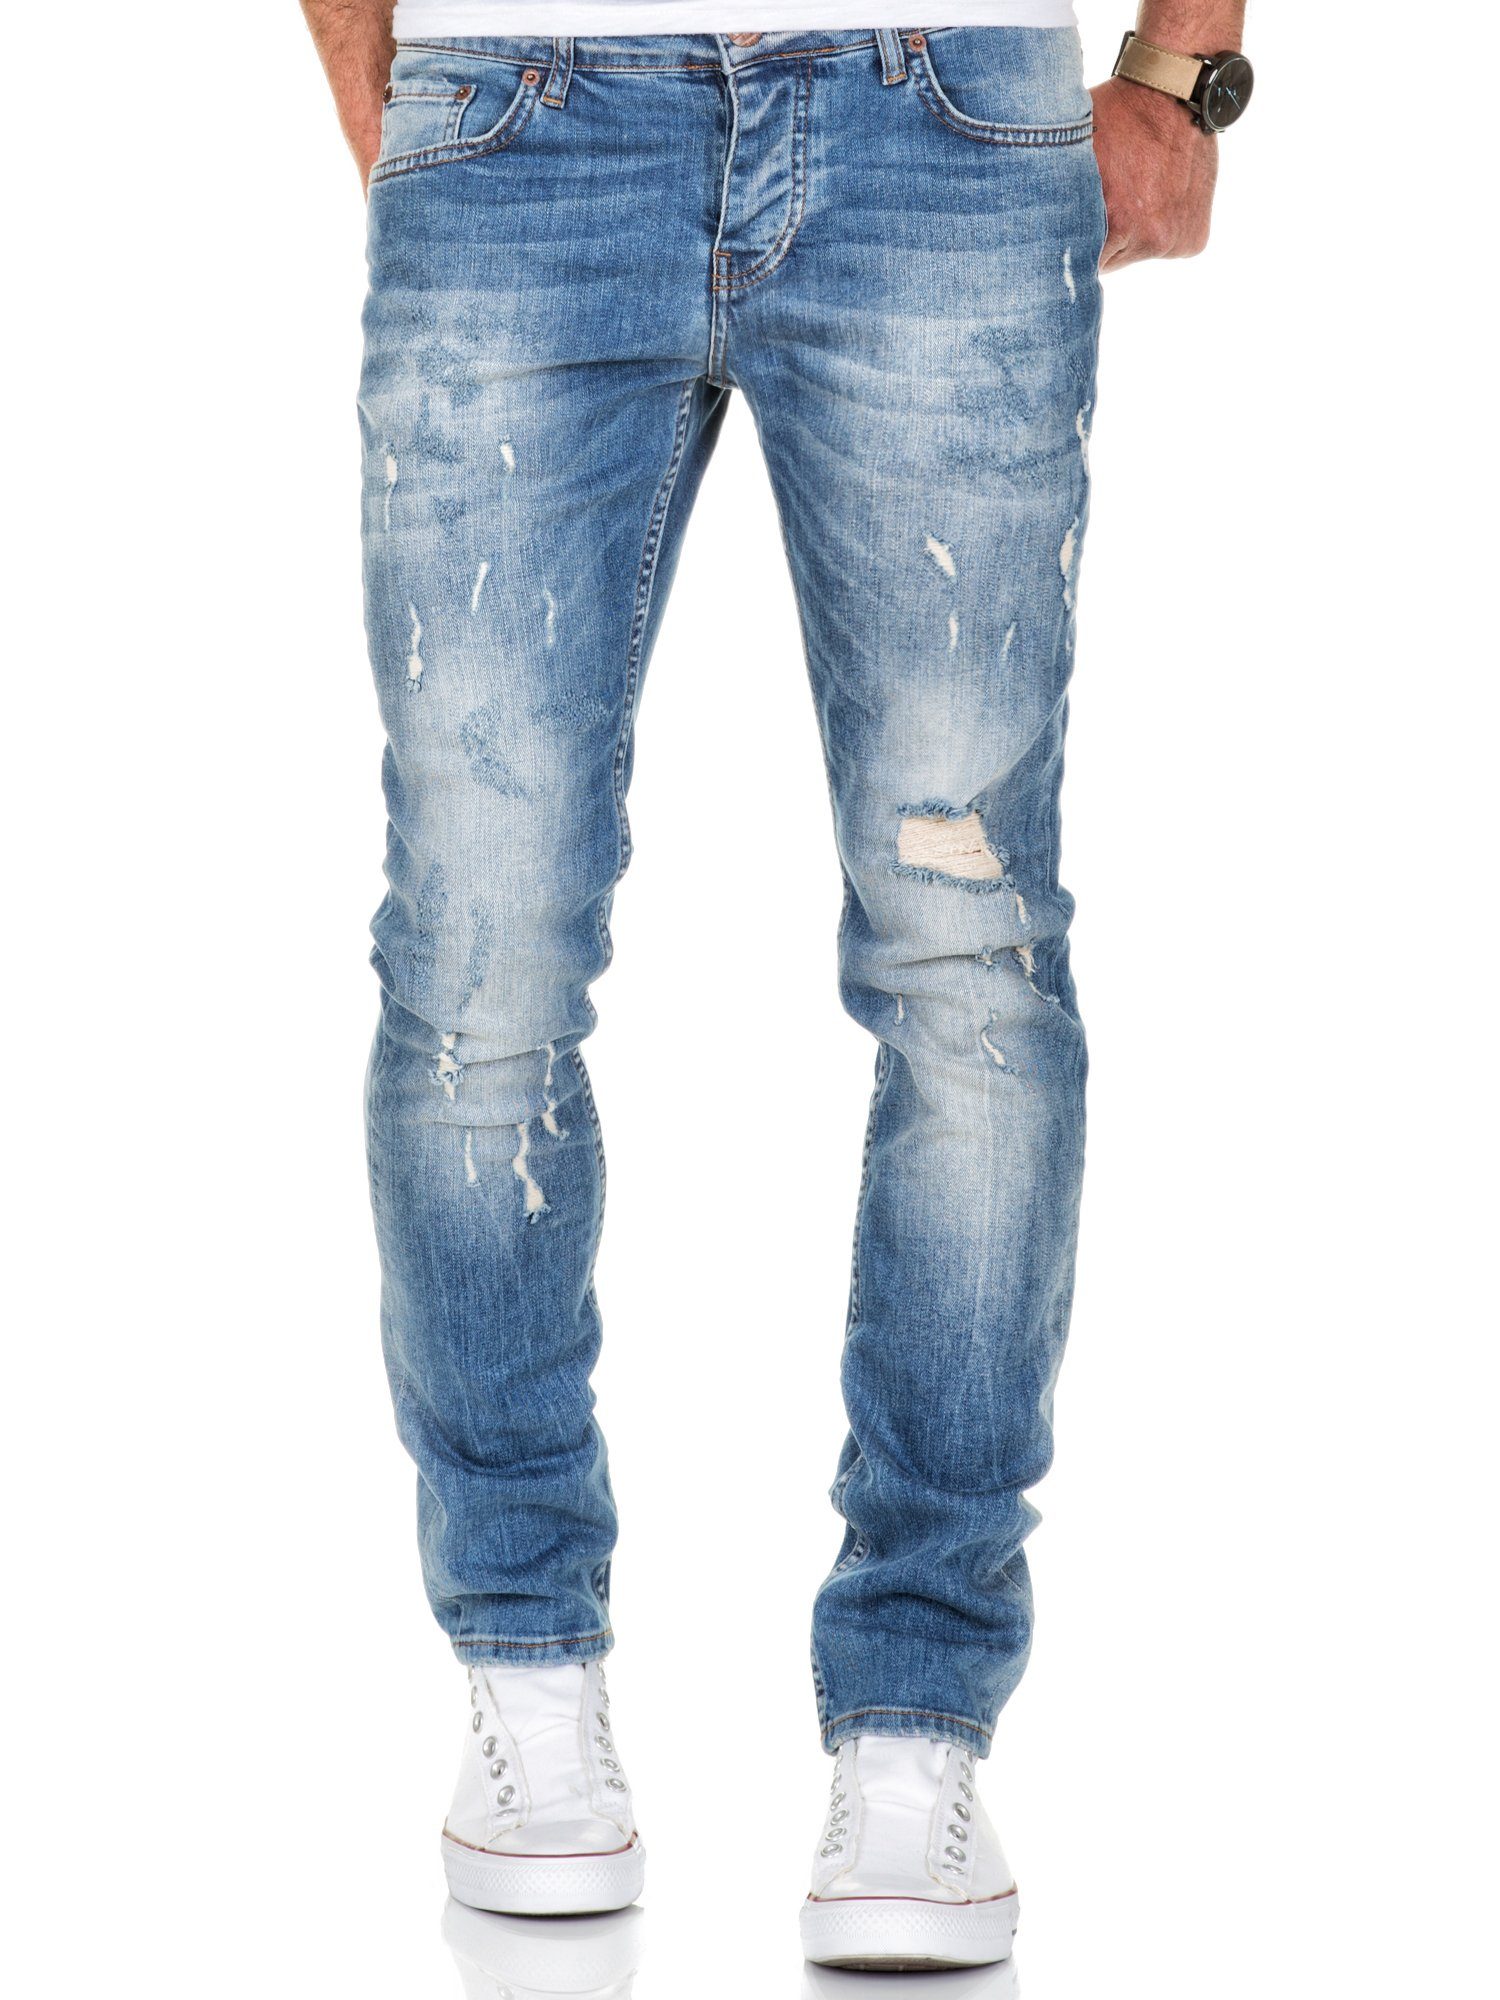 Amaci&Sons Slim-fit-Jeans FRESNO Slim Fit Destroyed Jeans Herren Destroyed Regular Slim Denim Basic Hose Hellblau